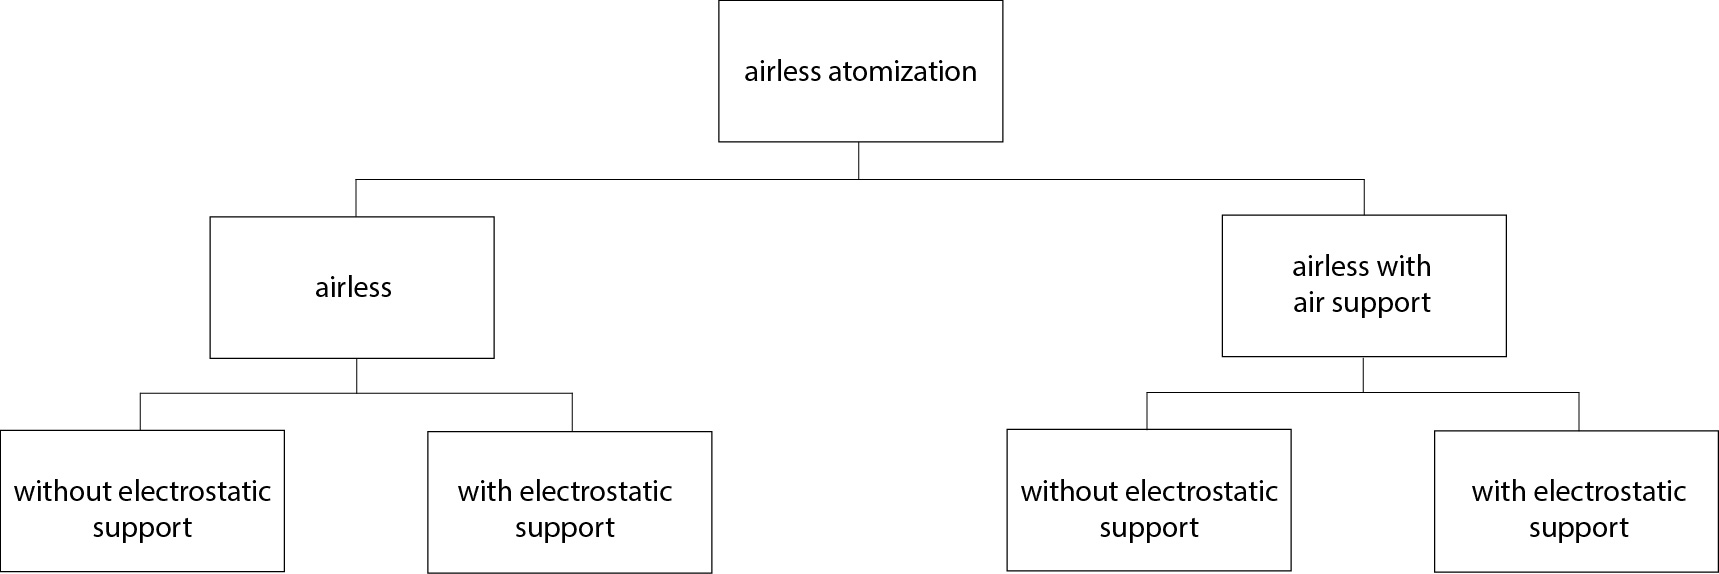 Airspray vs. Airless  2  ENG